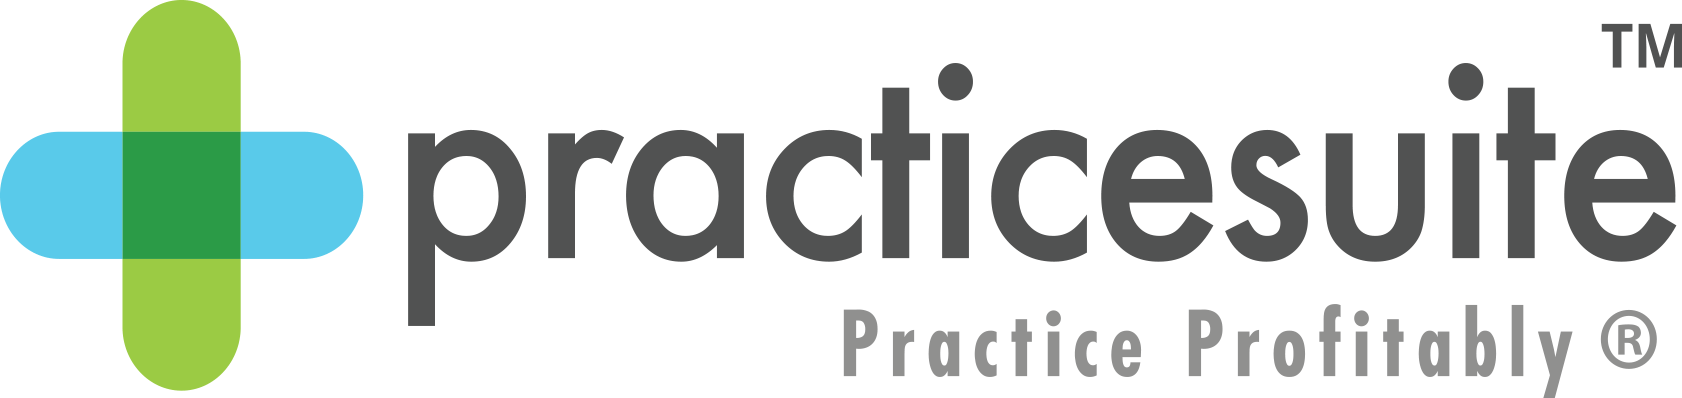 PracticeSuite_logo